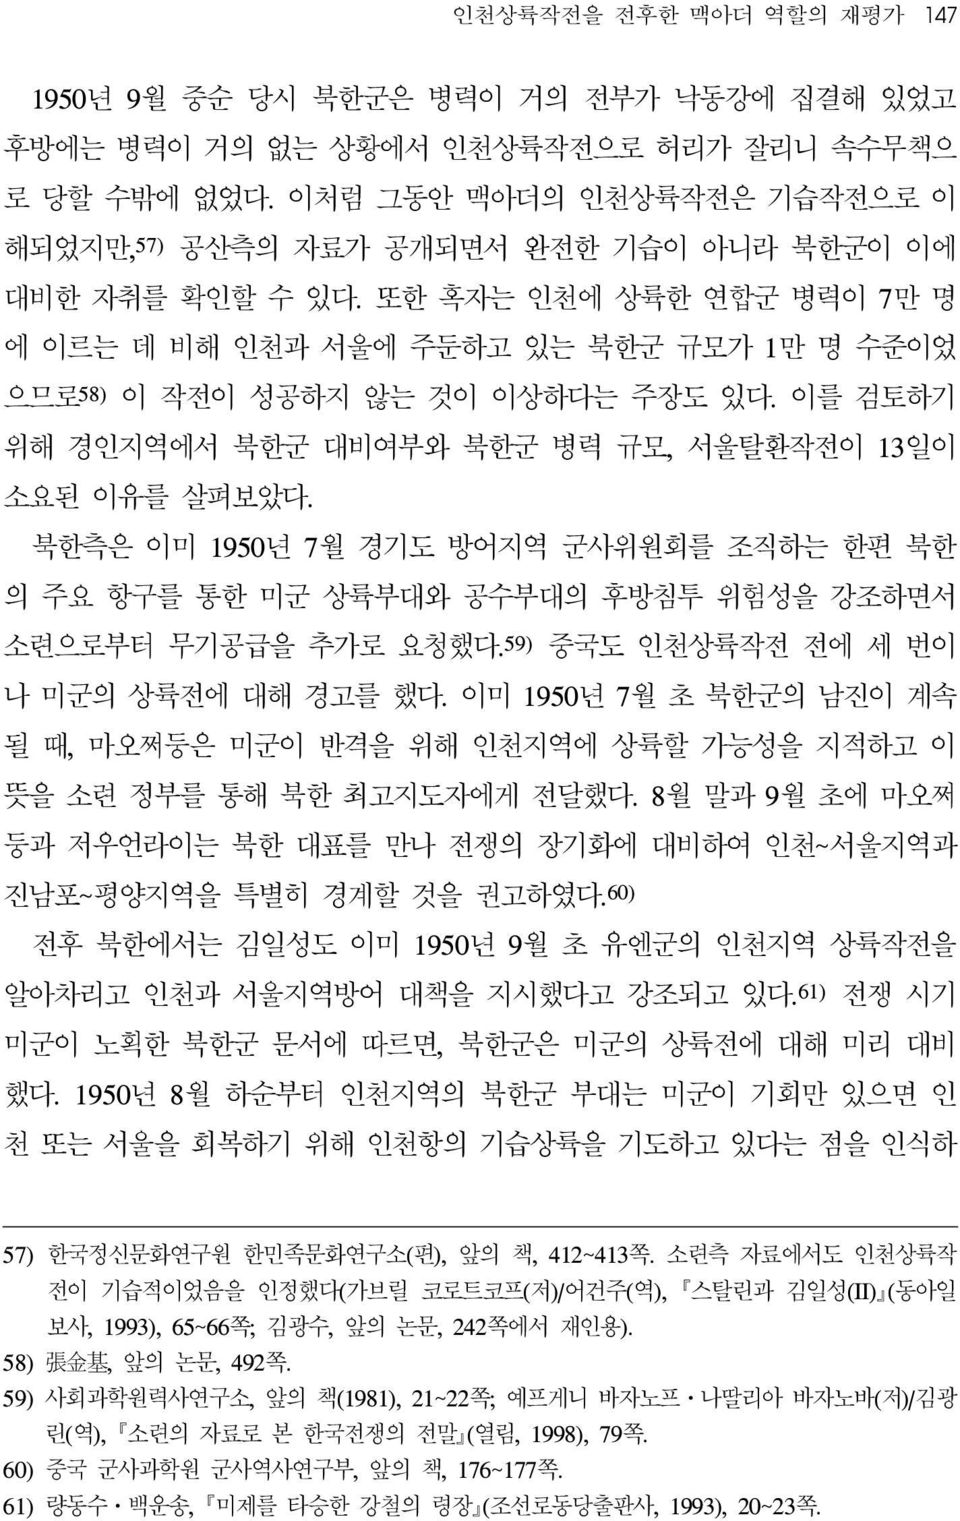 또한 혹자는 인천에 상륙한 연합군 병력이 7만 명 에 이르는 데 비해 인천과 서울에 주둔하고 있는 북한군 규모가 1만 명 수준이었 으므로 58) 이 작전이 성공하지 않는 것이 이상하다는 주장도 있다. 이를 검토하기 위해 경인지역에서 북한군 대비여부와 북한군 병력 규모, 서울탈환작전이 13일이 소요된 이유를 살펴보았다.